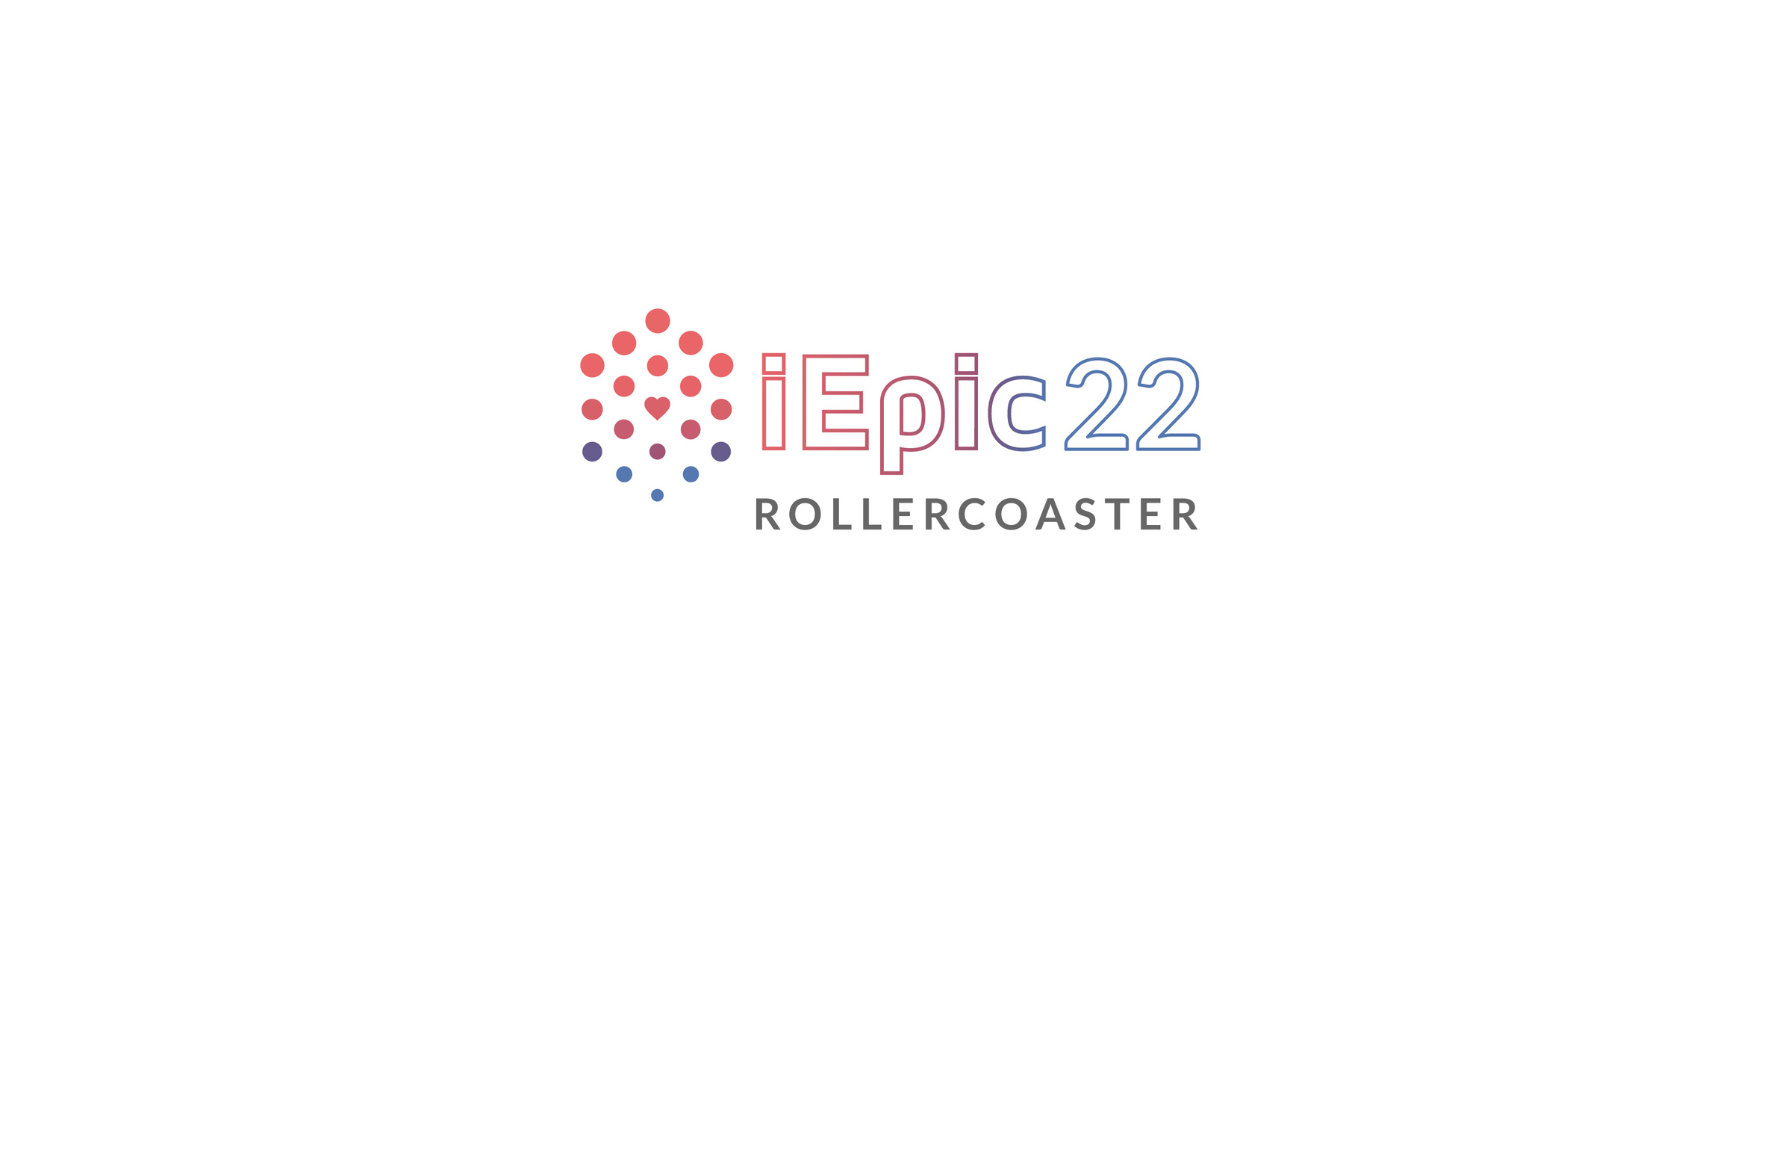 ROLLER COASTER EPIC22